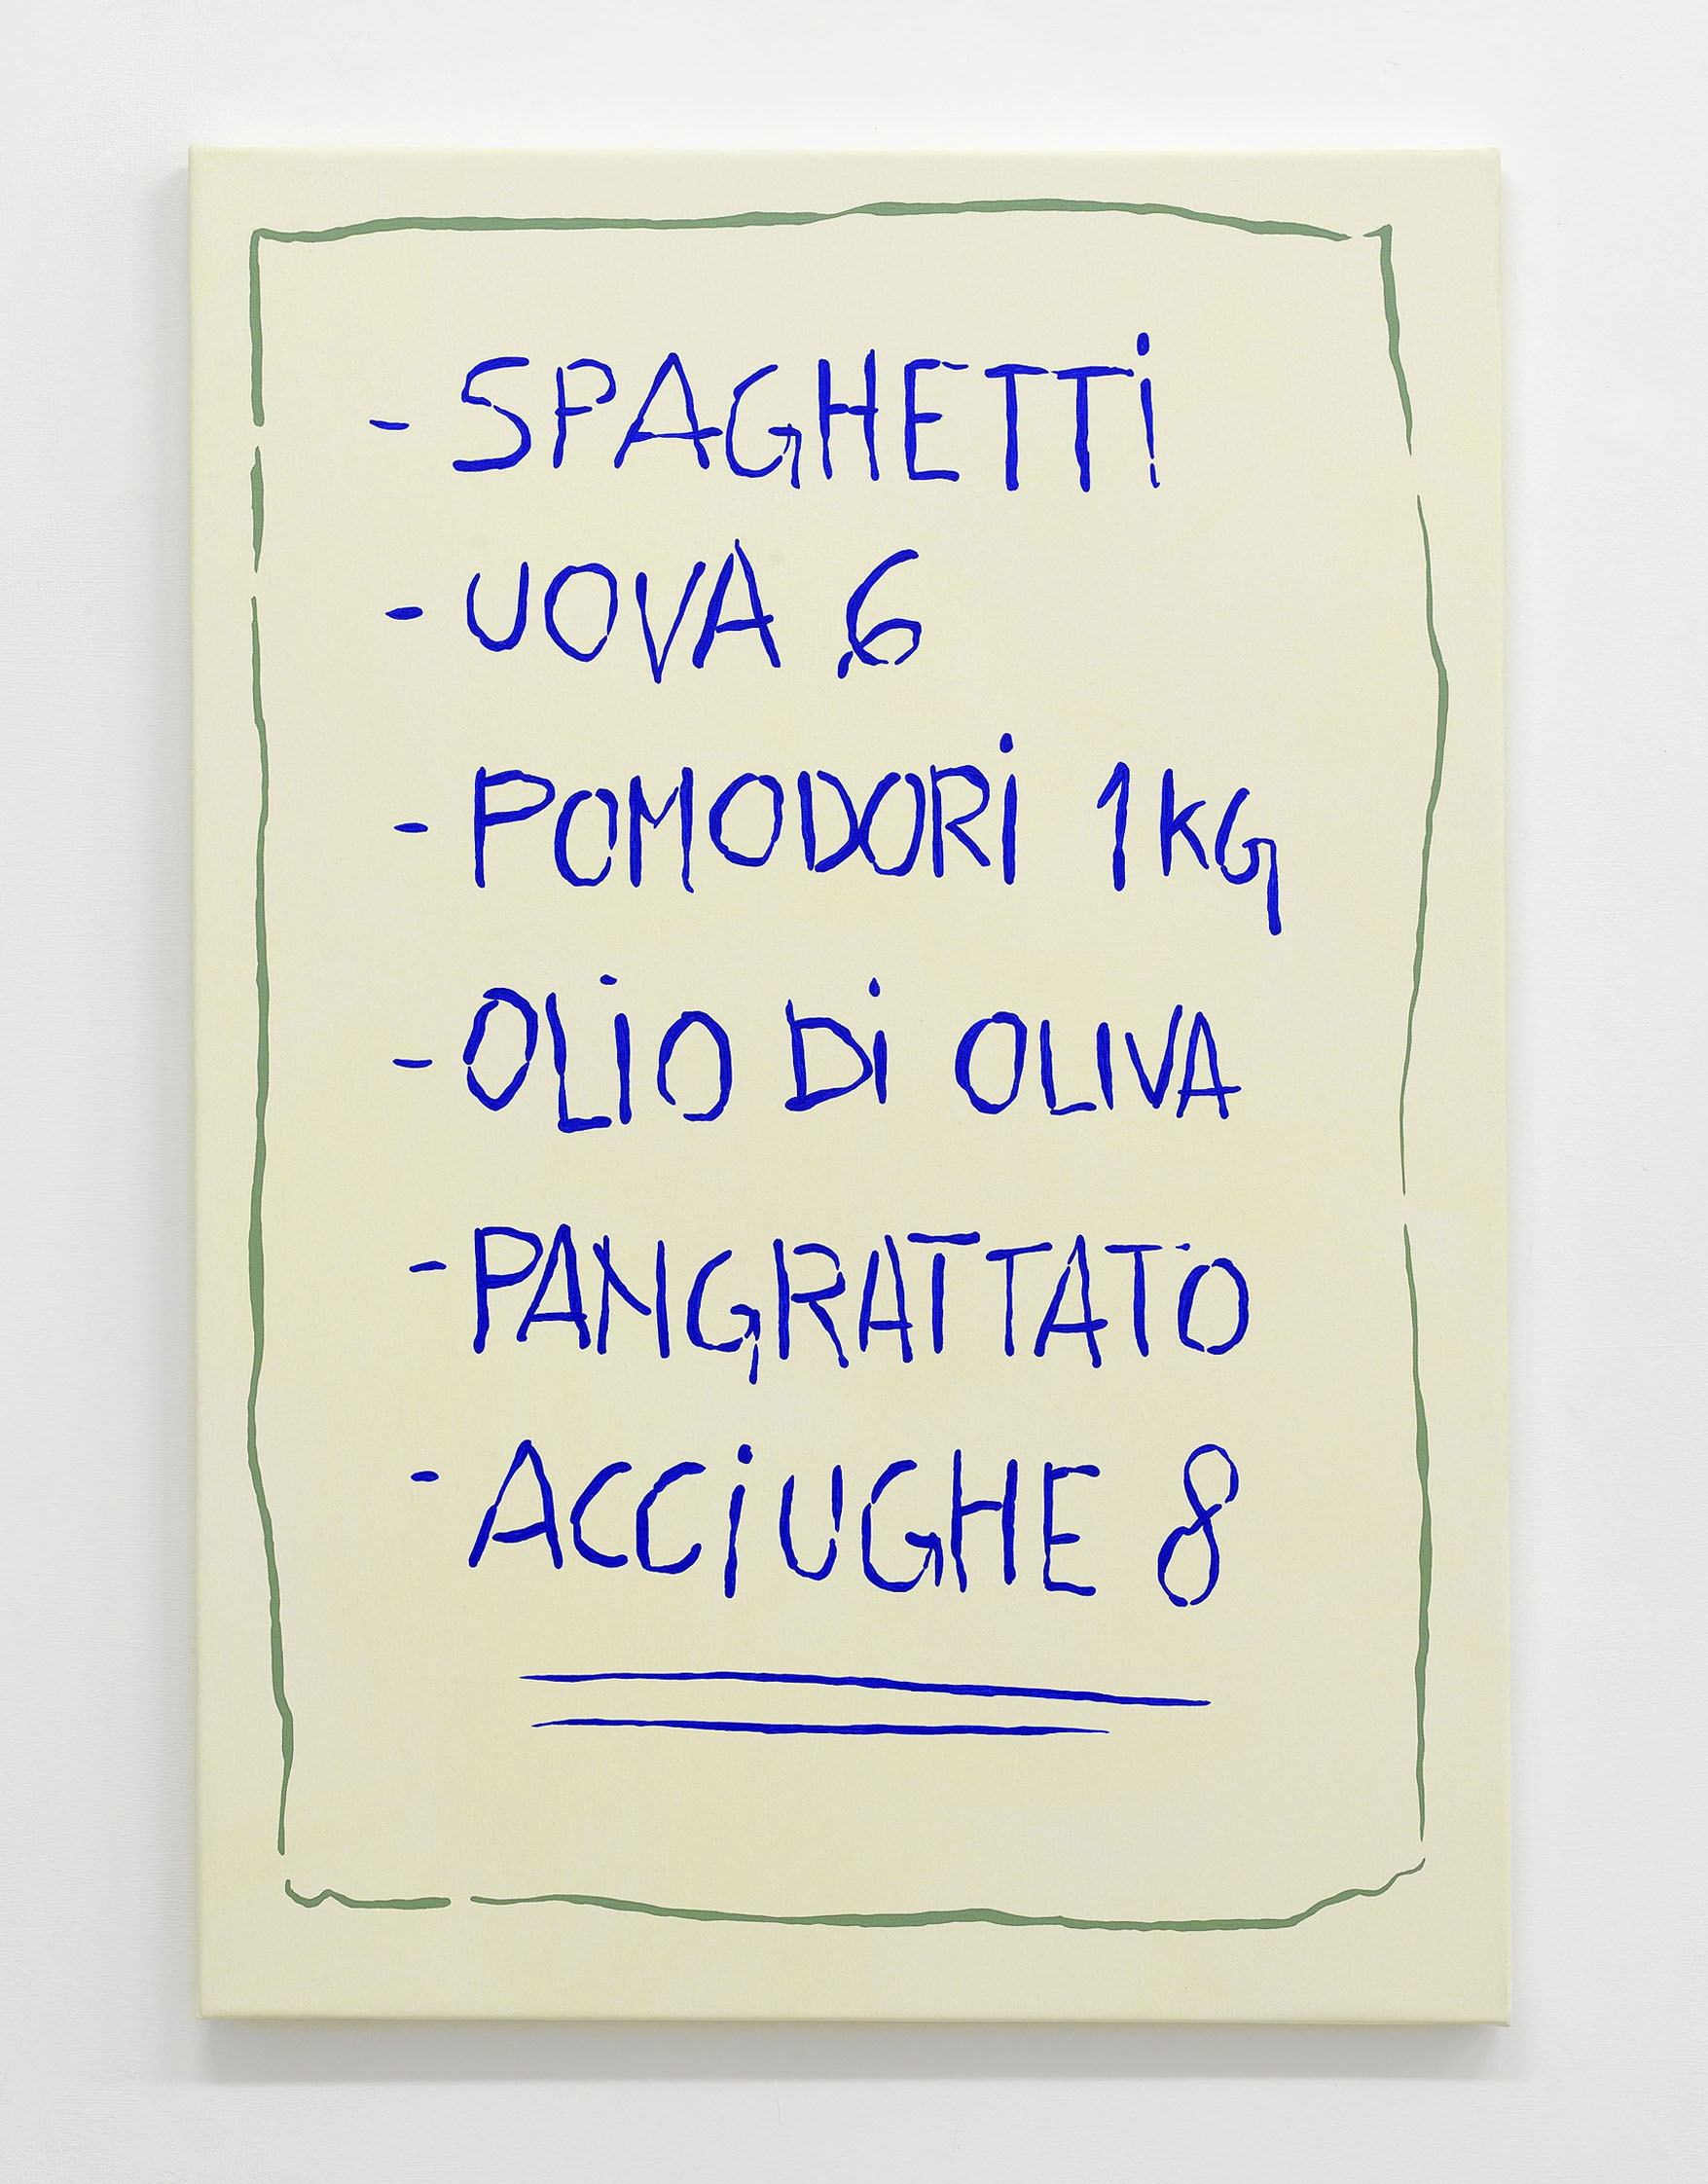 Miart Stefano Calligaro Spaghetti Uova 6 Pomodori 1 Kg Olio di oliva Pangrattato Acciughe 8, 2016 Acrylic on canvas, 100x70 cm Courtesy the artist and UNA, Piacenza 